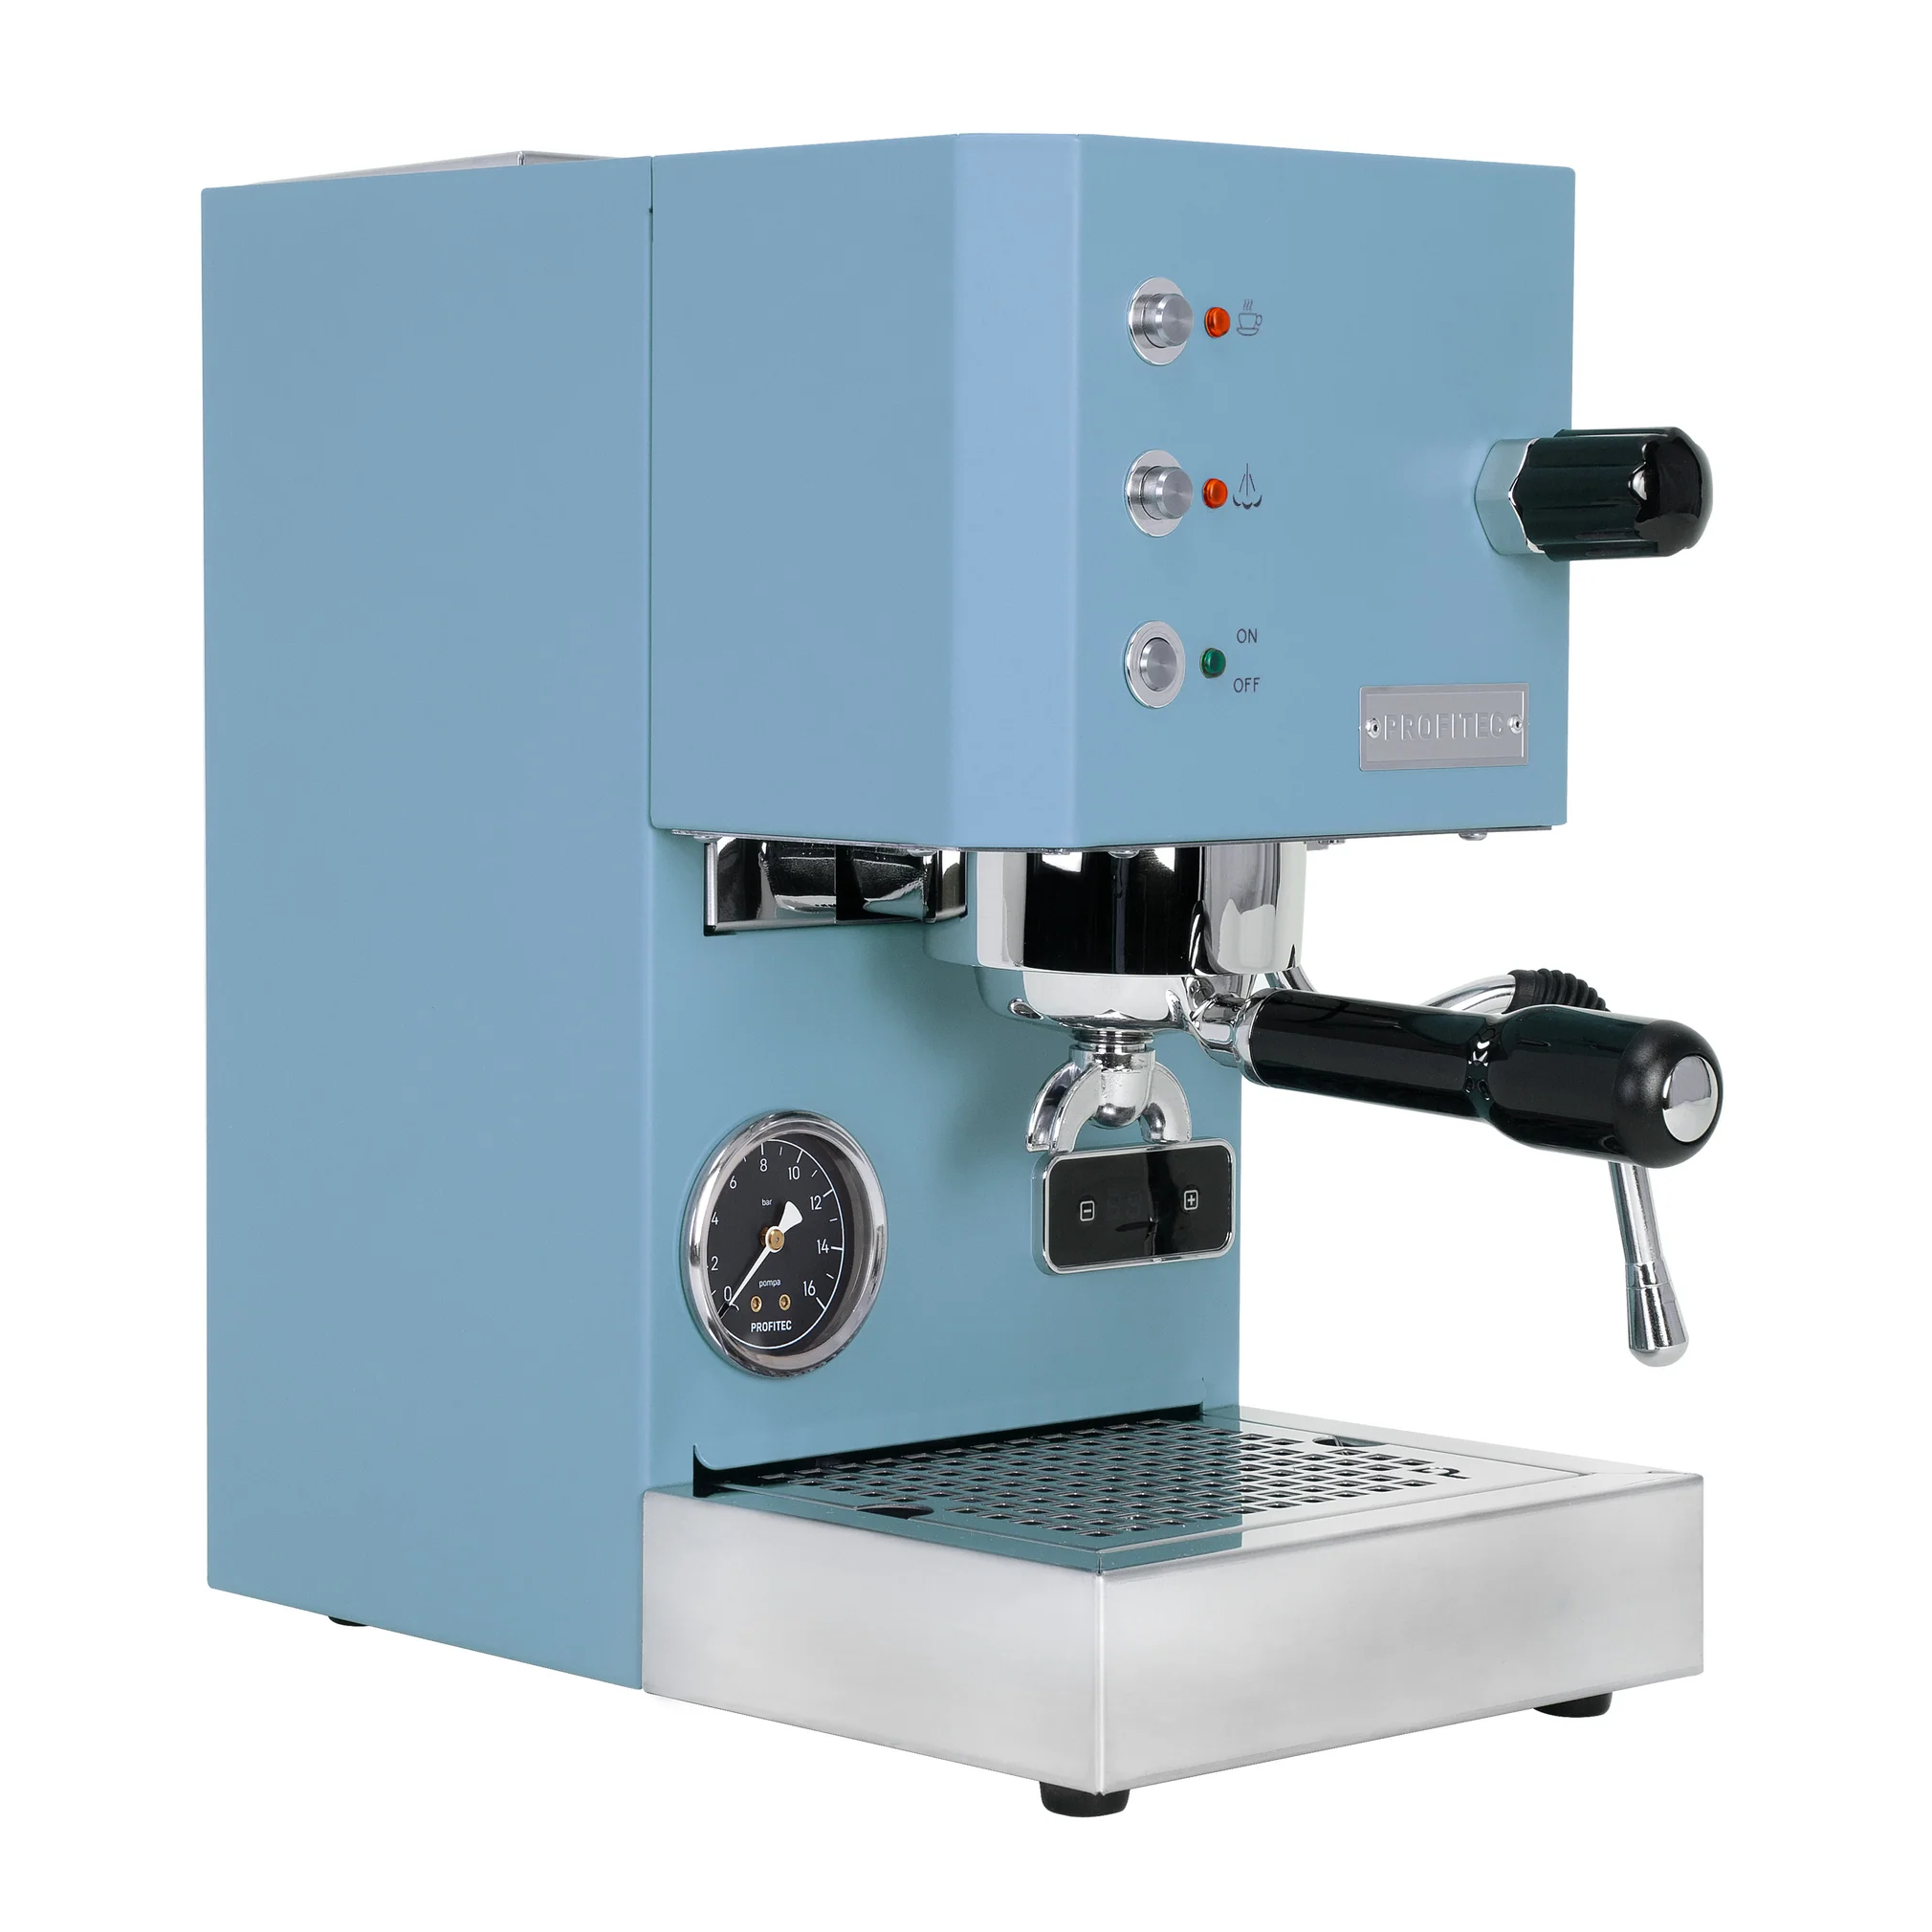 Profitec Go Espresso Machine